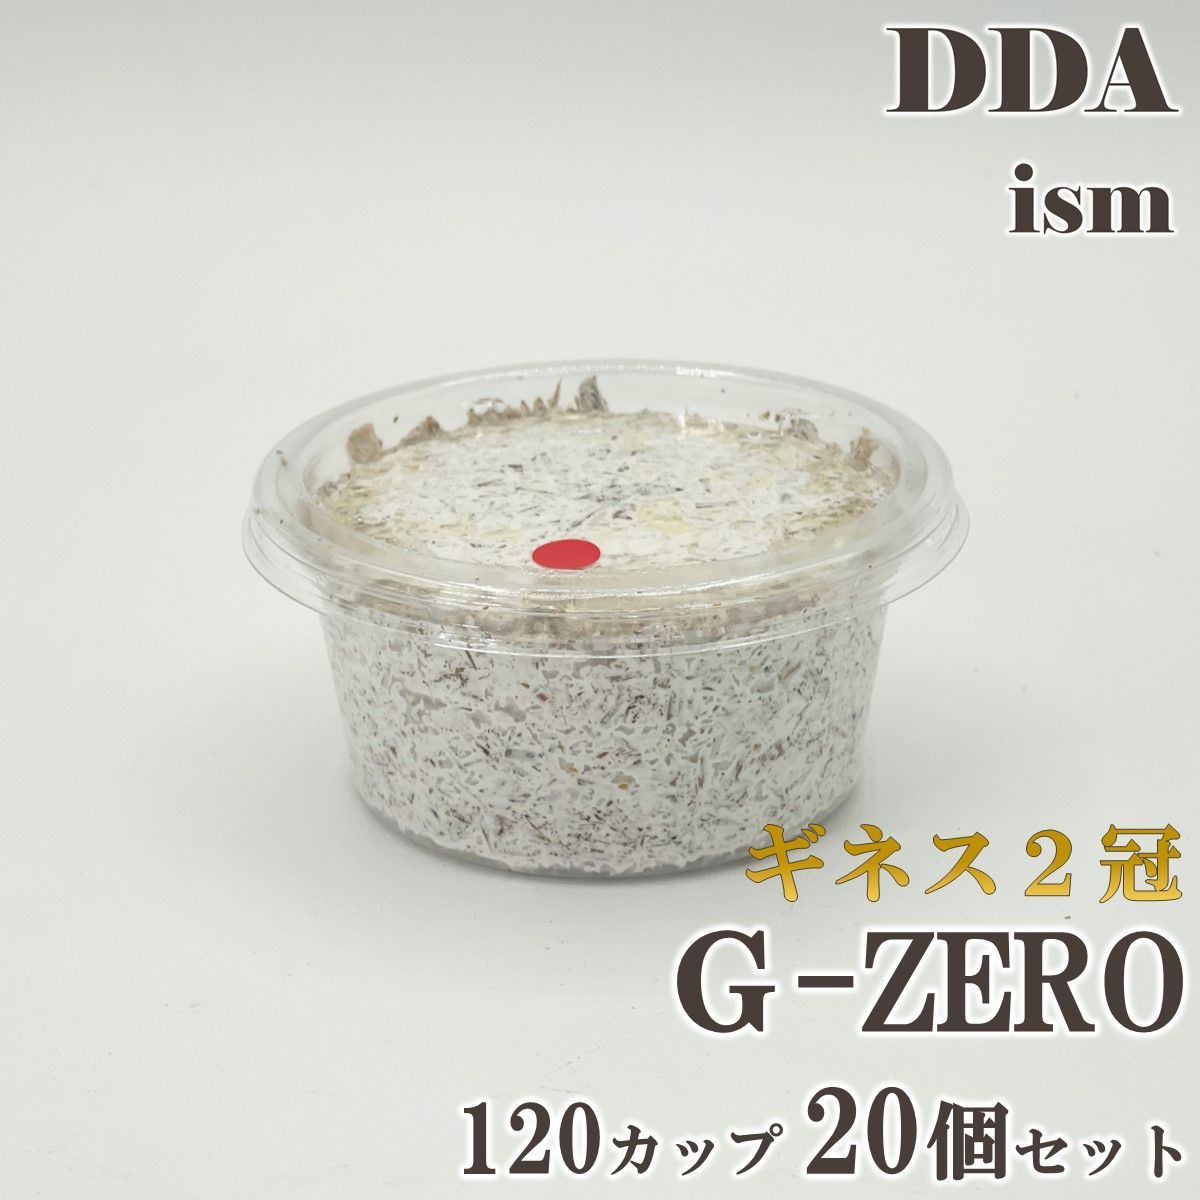 ギネス2冠 スマトラオオヒラタ108.8mm【DDA】G-ZERO 菌糸 120カップ 20 